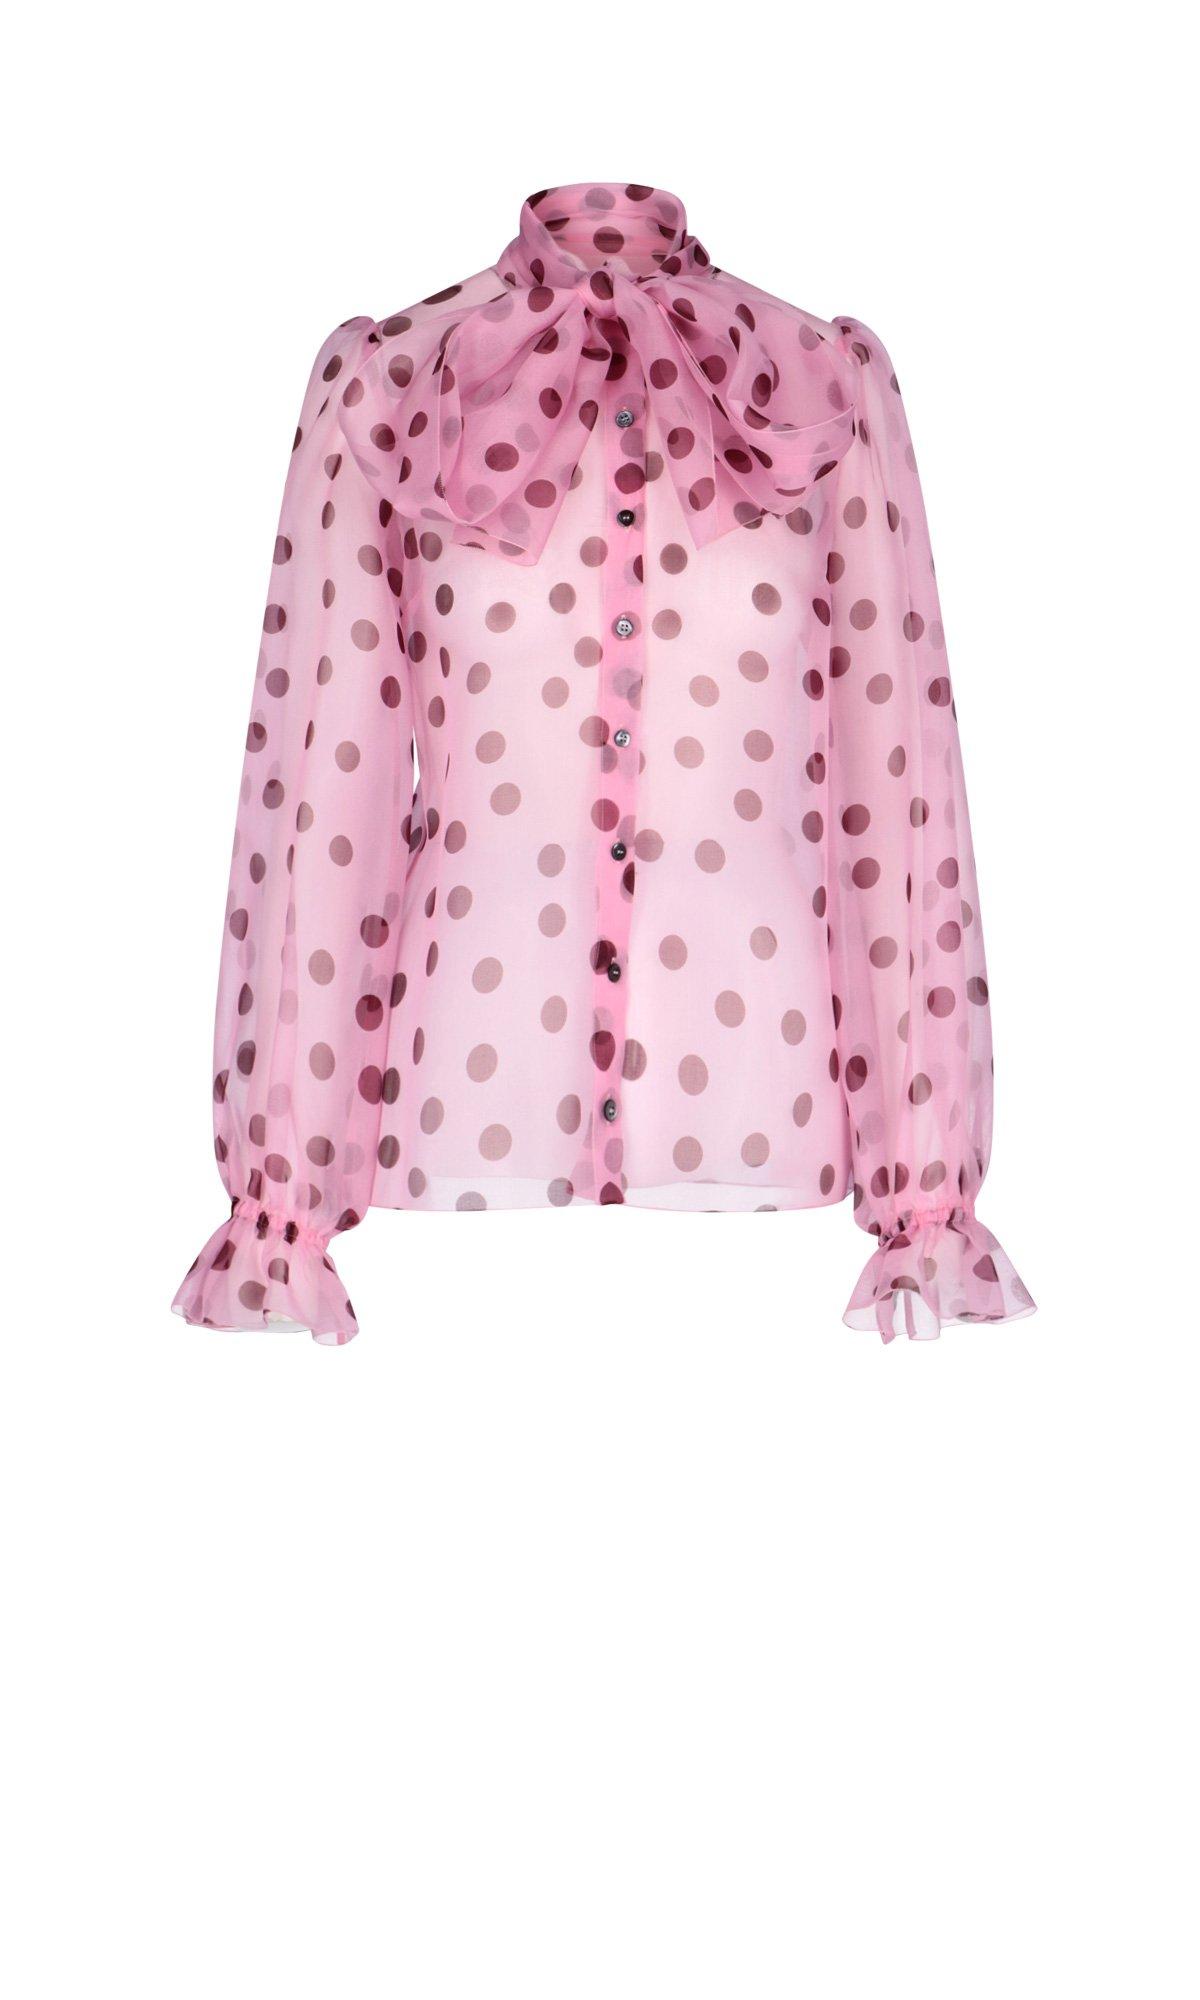 Dolce & Gabbana Silk Polka-dot Blouse in Pink - Lyst